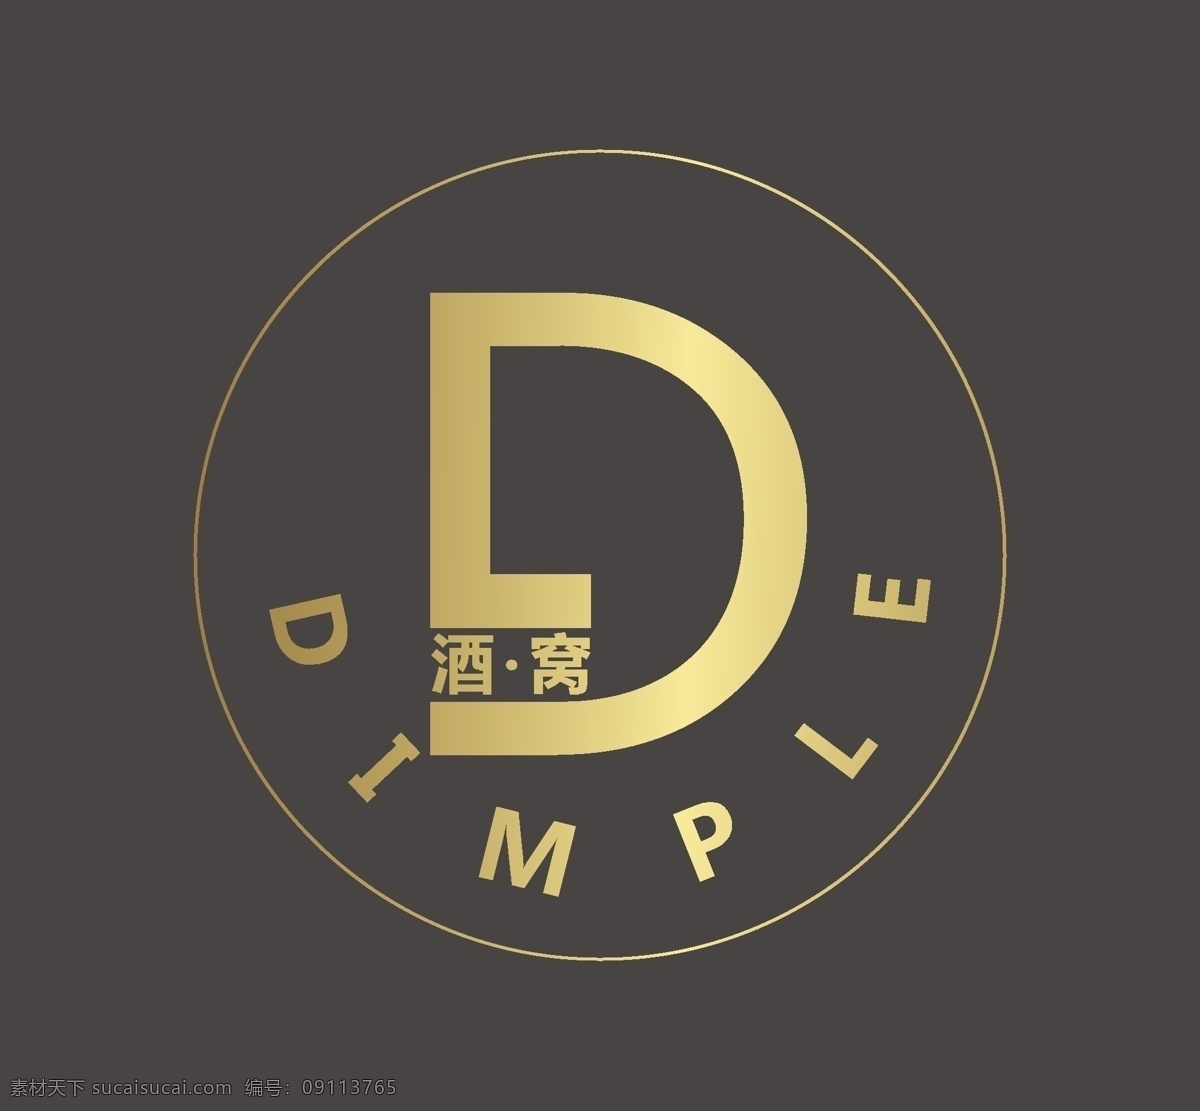 酒吧logo 酒吧 标志 金属 大气 字母 英文 logo设计